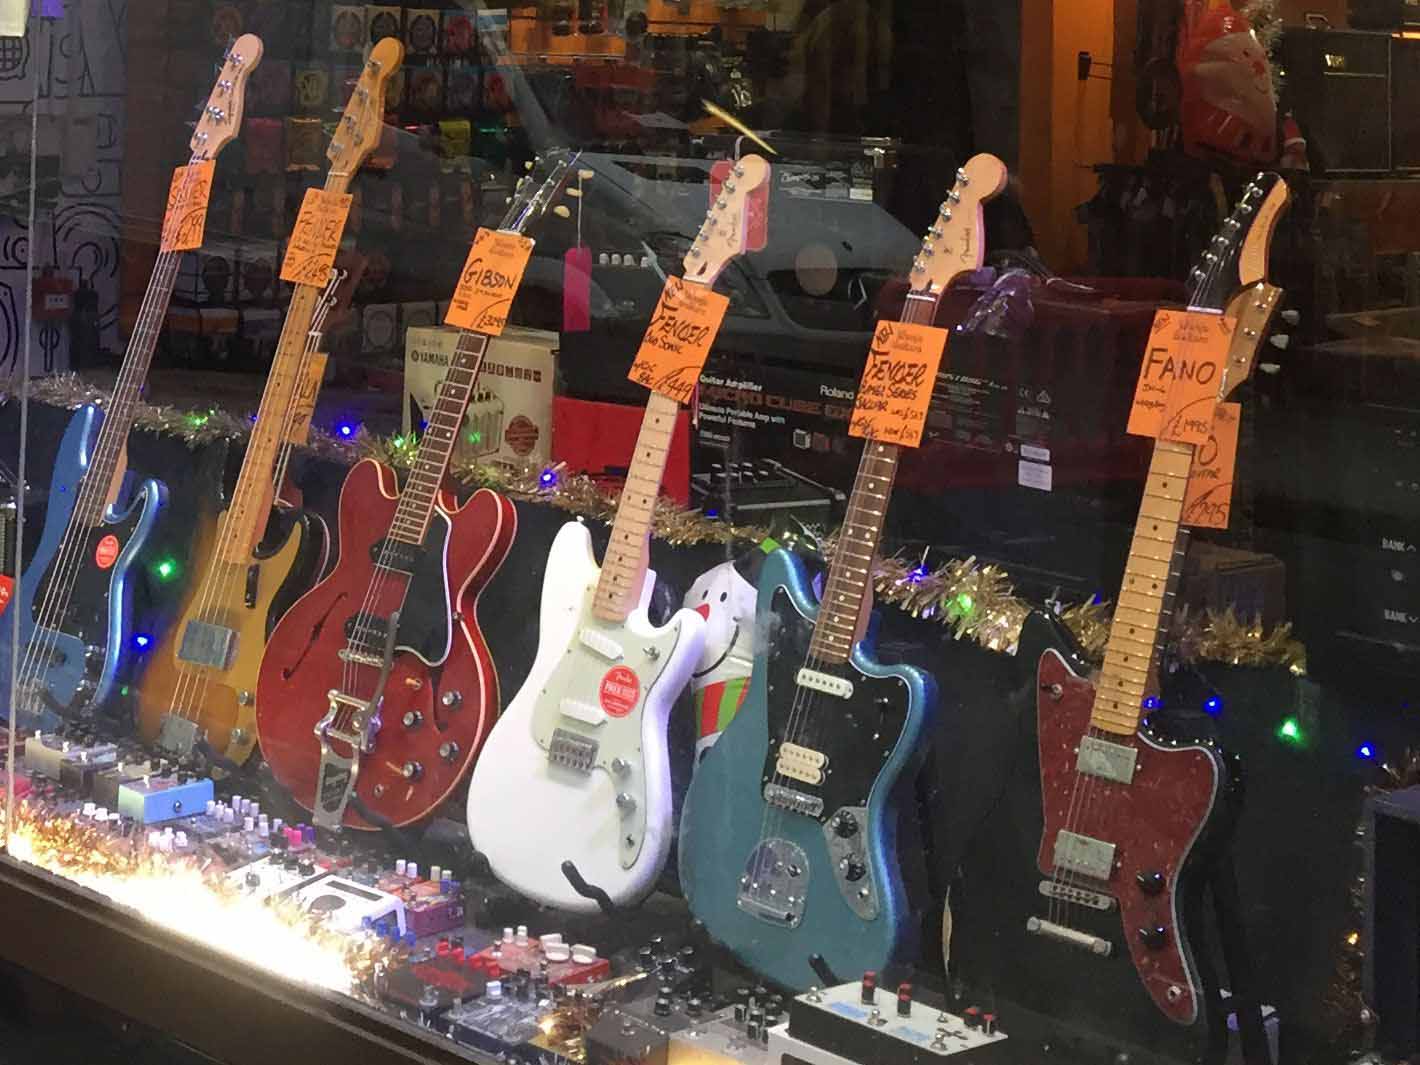 Guitars in a shop window on Denmark Street